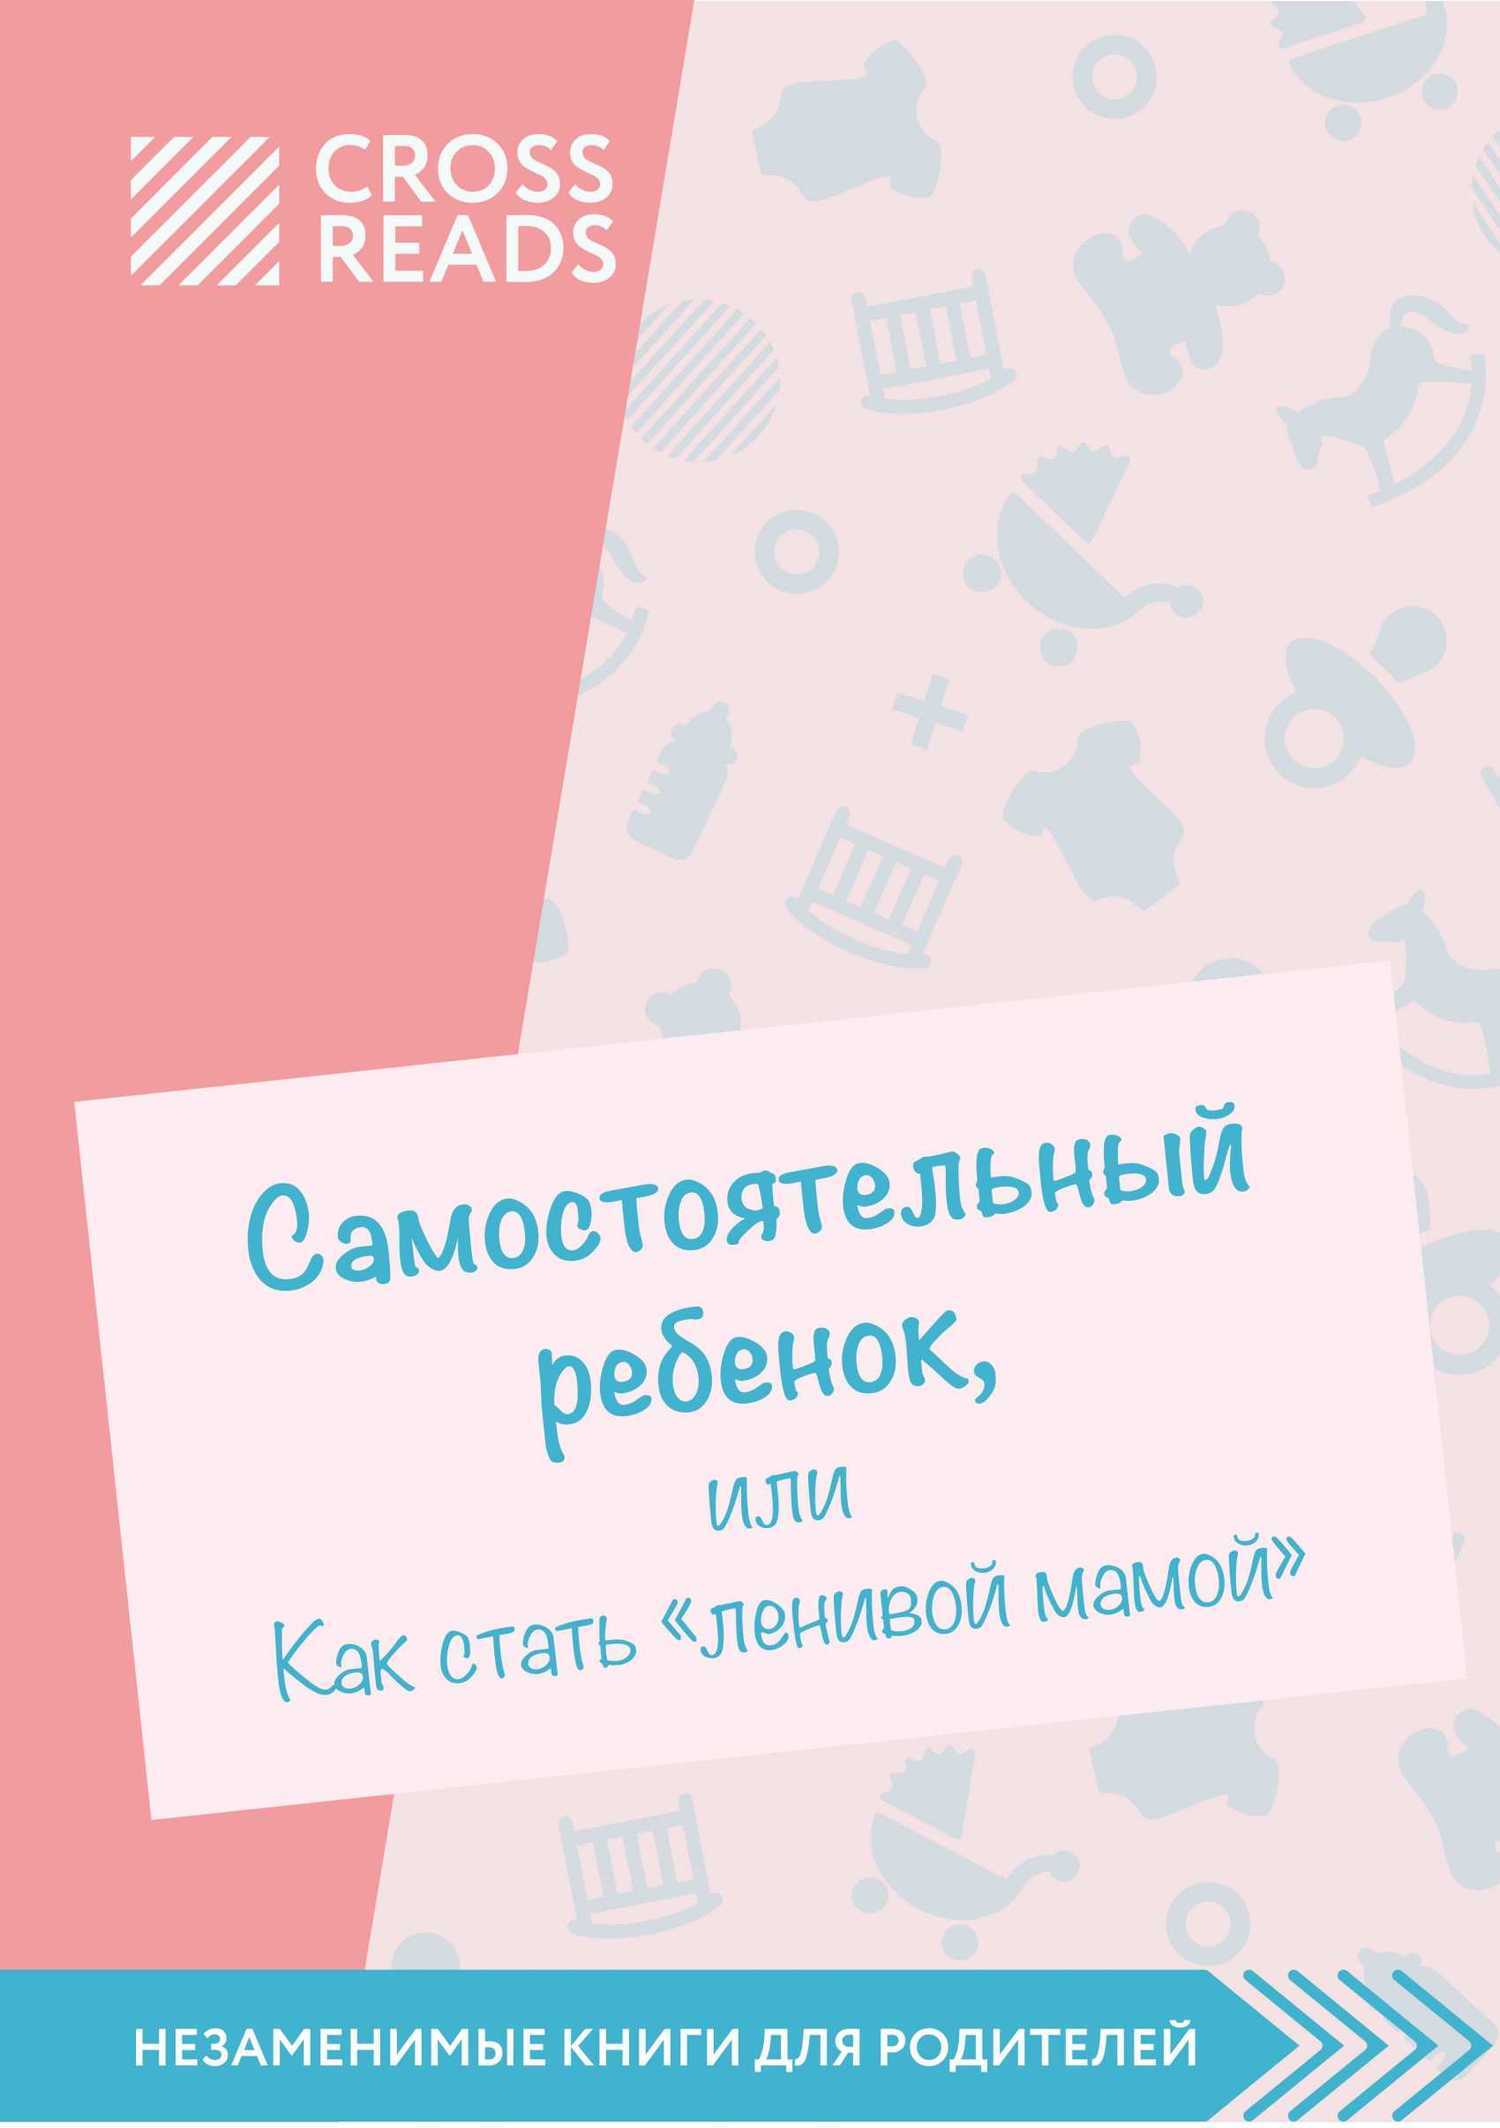 Обзор на книгу Анны Быковой «Самостоятельный ребенок, или как стать ленивой мамой»